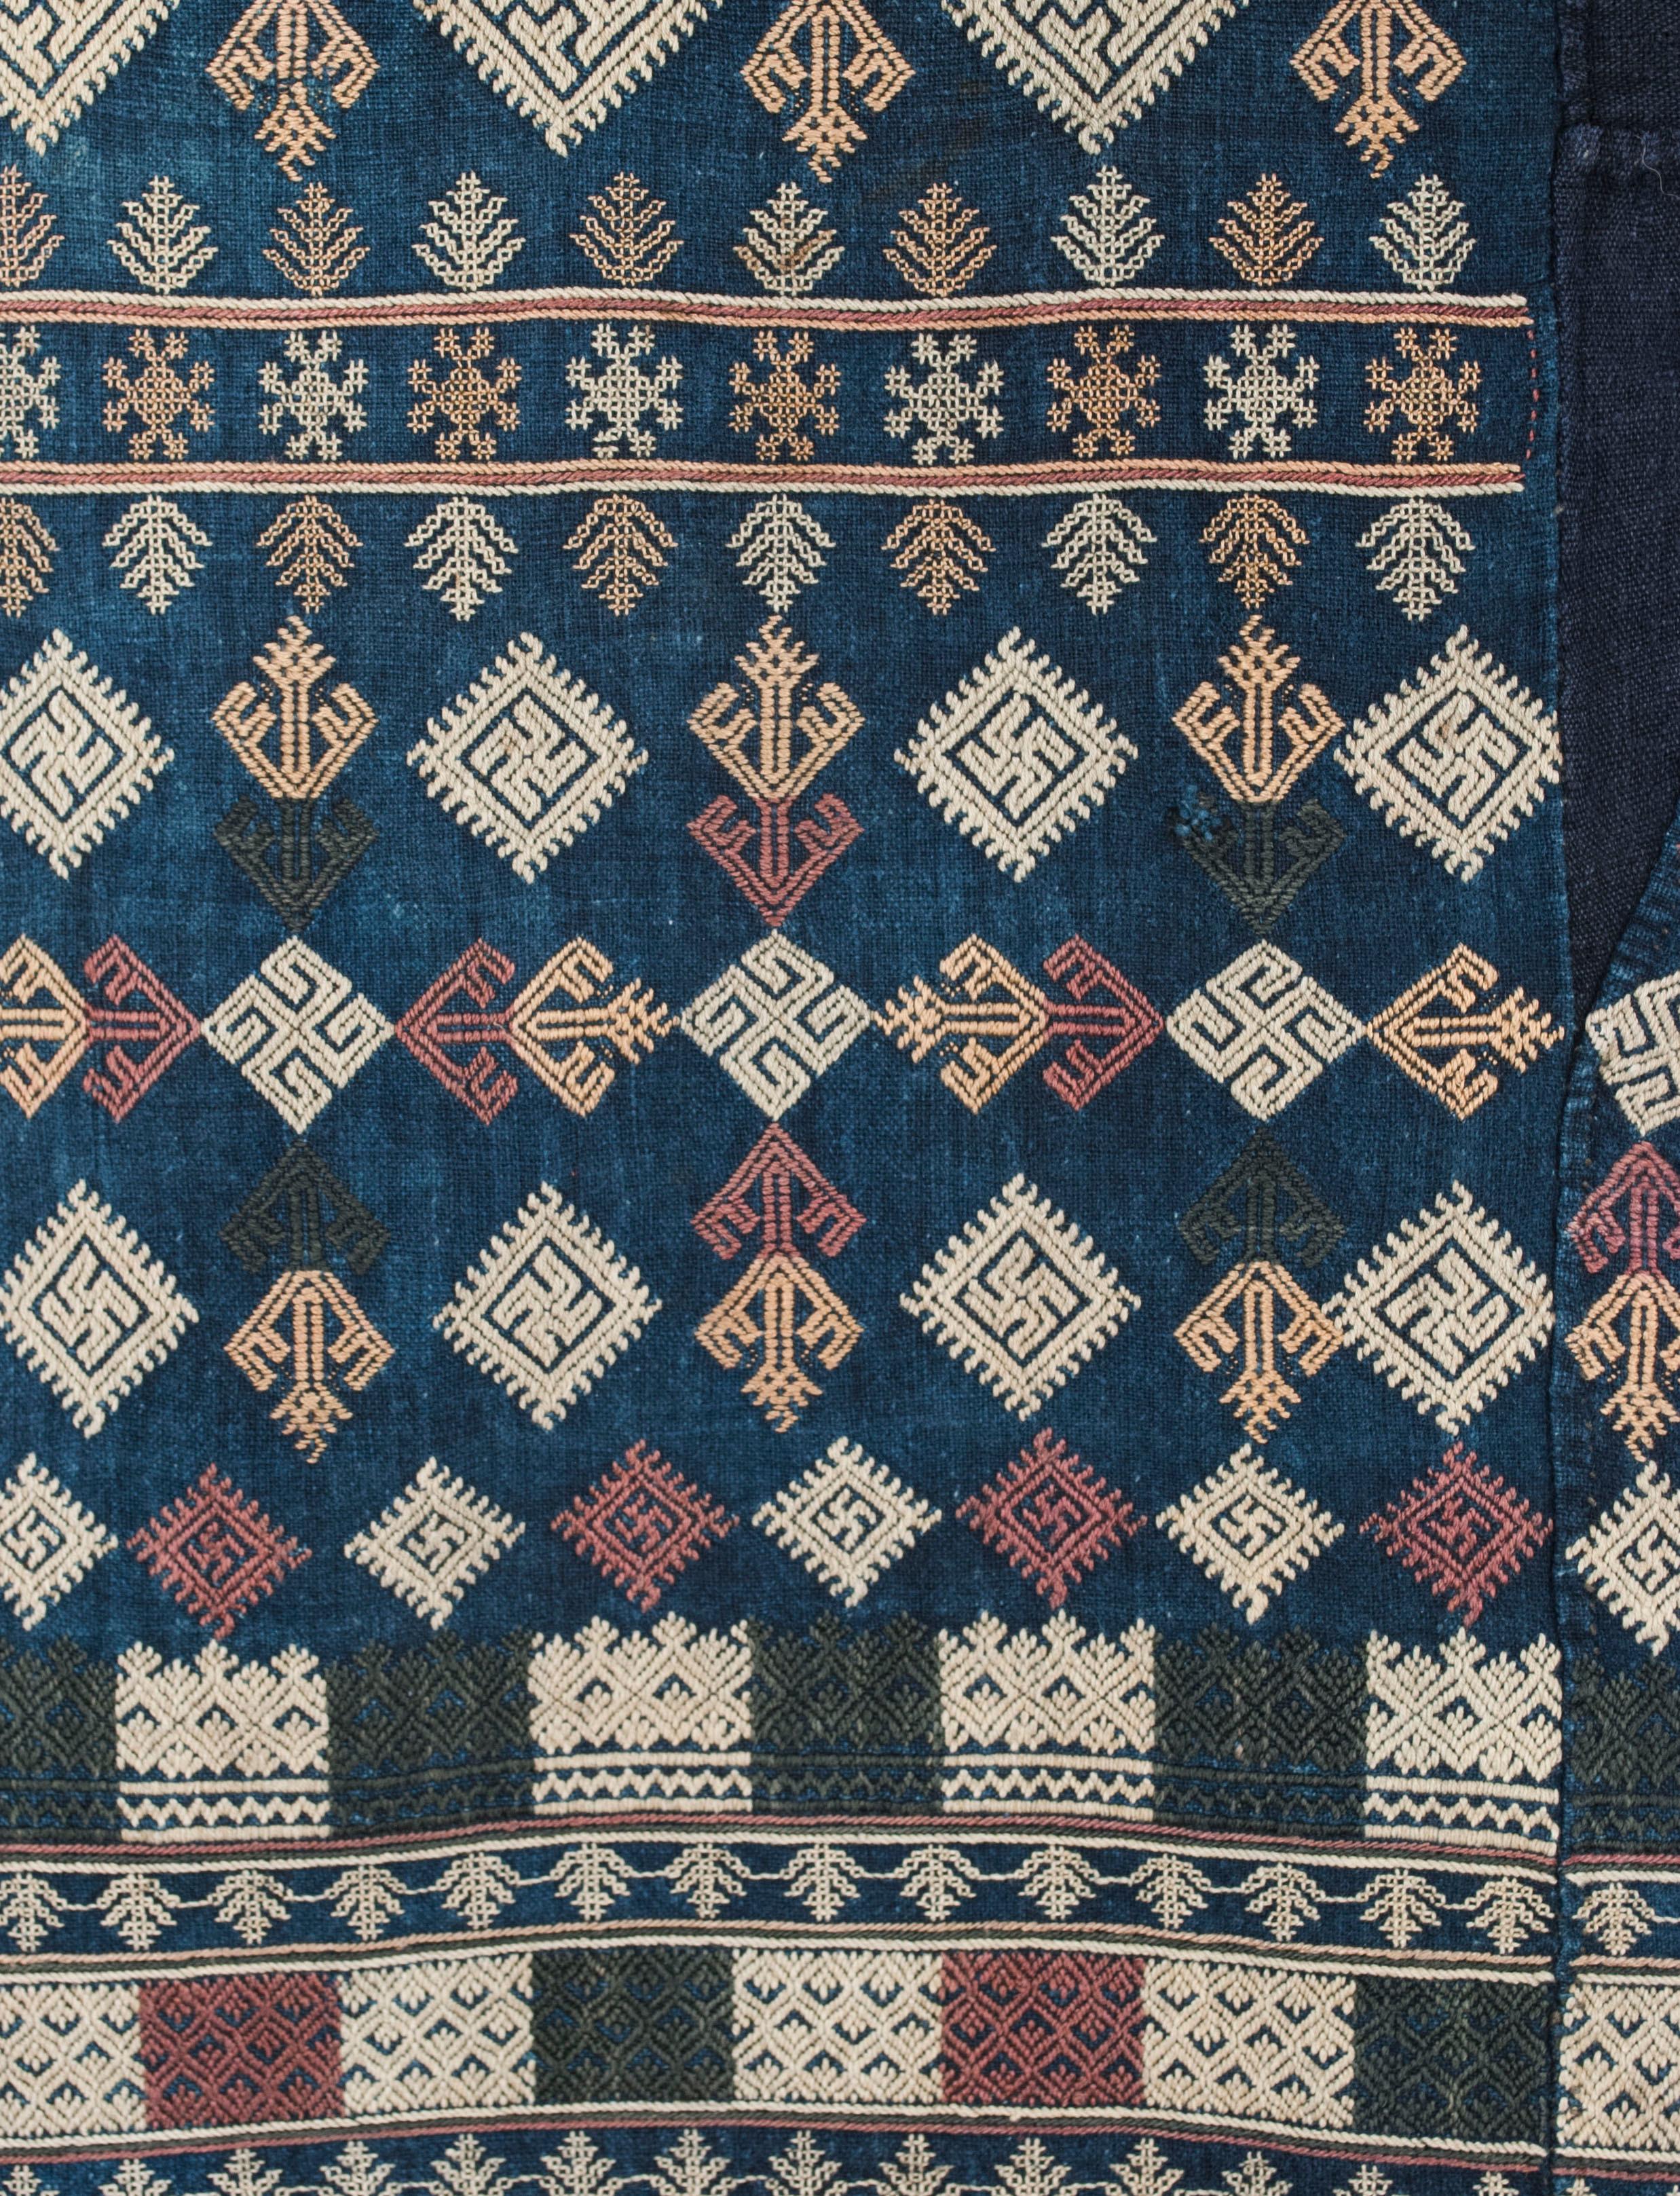 Pantalon brodé du groupe Yao, milieu du 20e siècle

Les tons terreux sourds des motifs de ce pantalon brodé sont typiques du travail effectué par le groupe ethnique Yao dans le nord du Laos avant l'utilisation des teintures à l'aniline. La